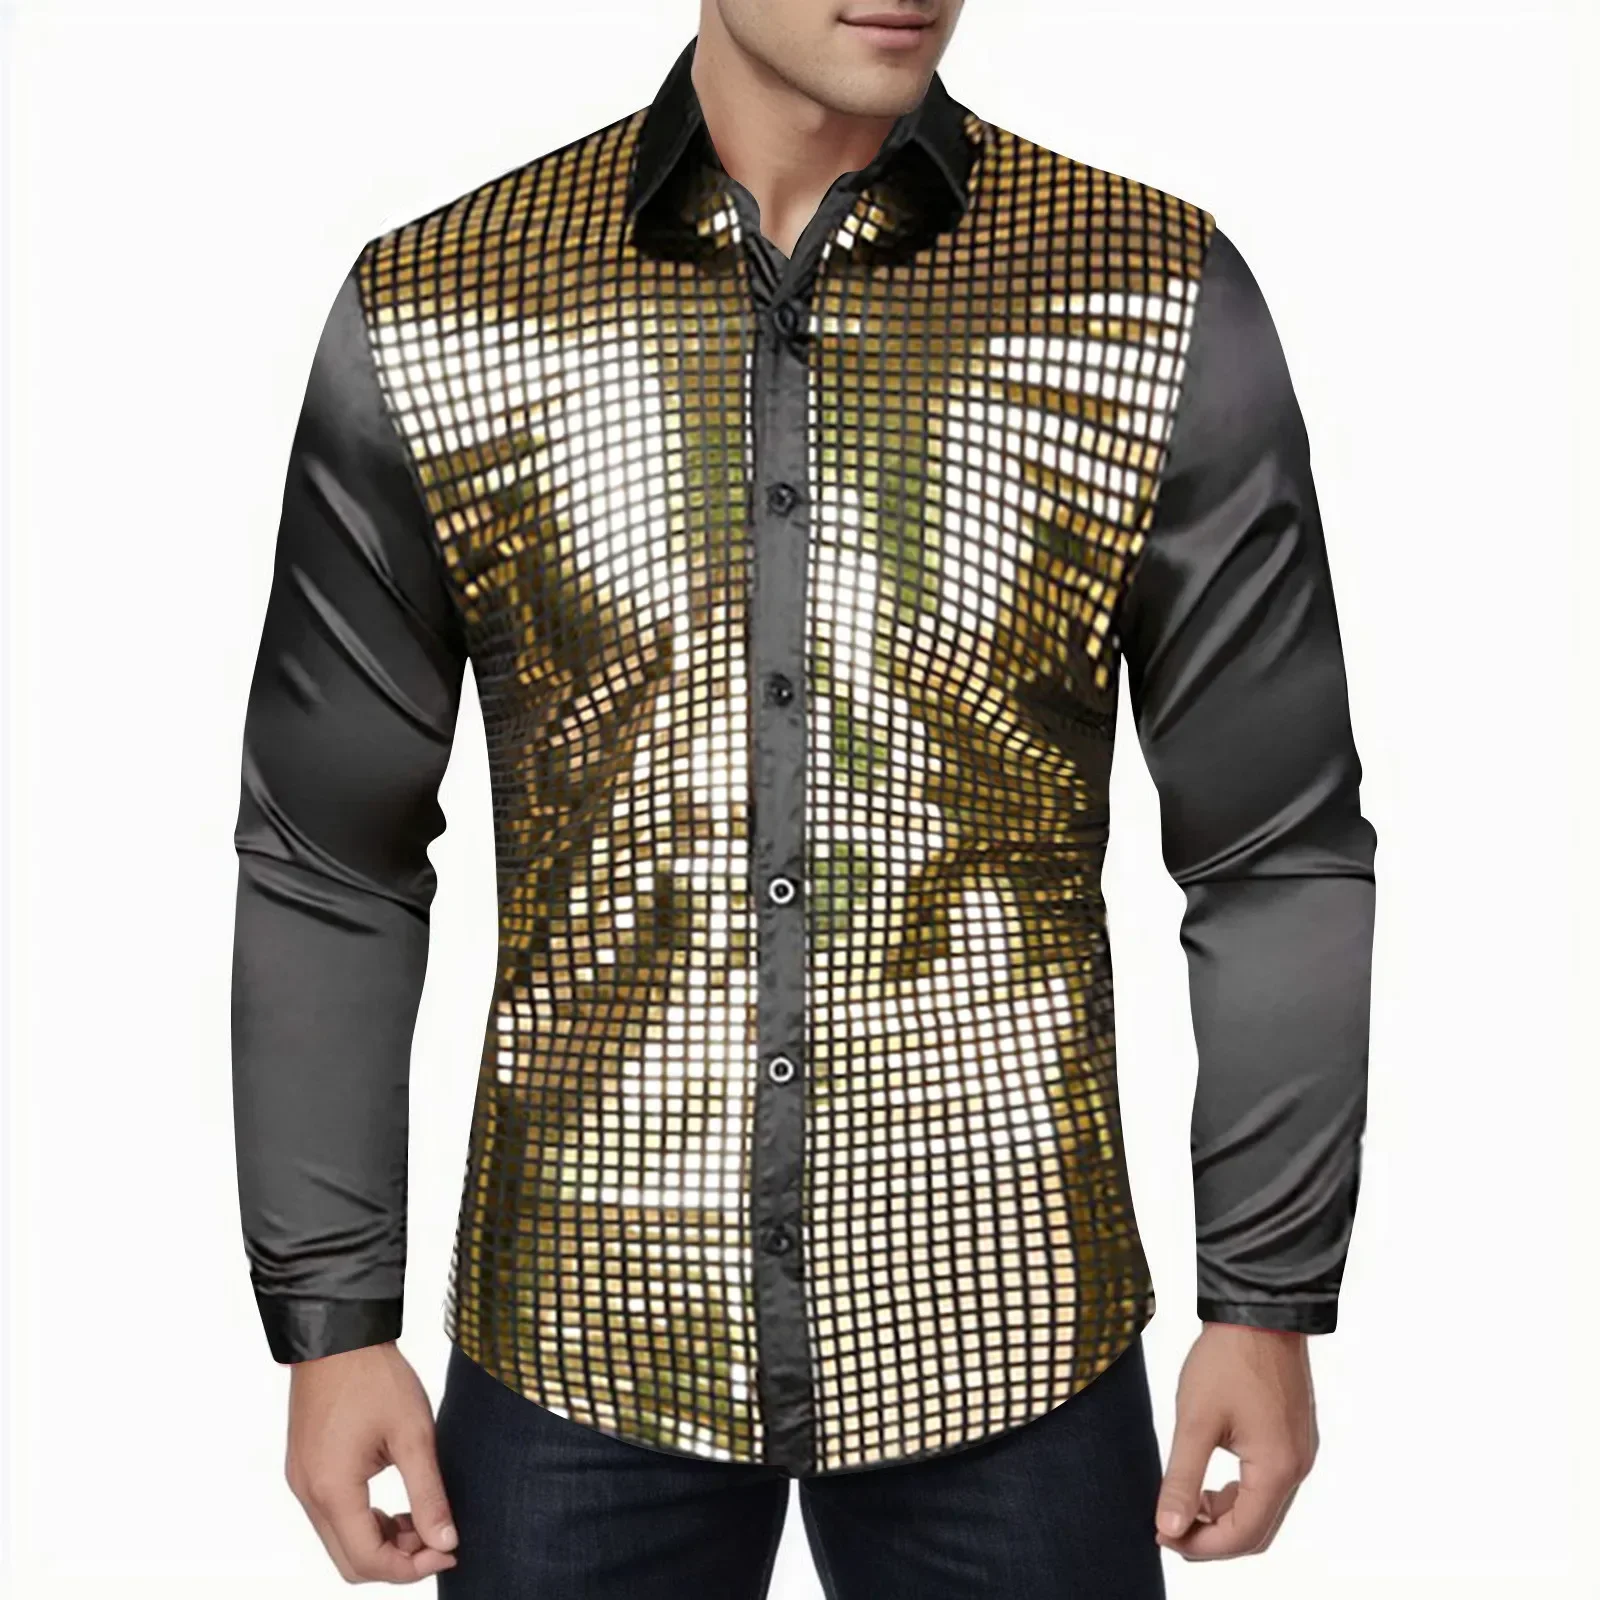 

Мужская рубашка с блестками, Классическая рубашка с длинными рукавами, на пуговицах, для дискотеки 70-х годов, для ночного клуба, с длинными рукавами и пуговицами